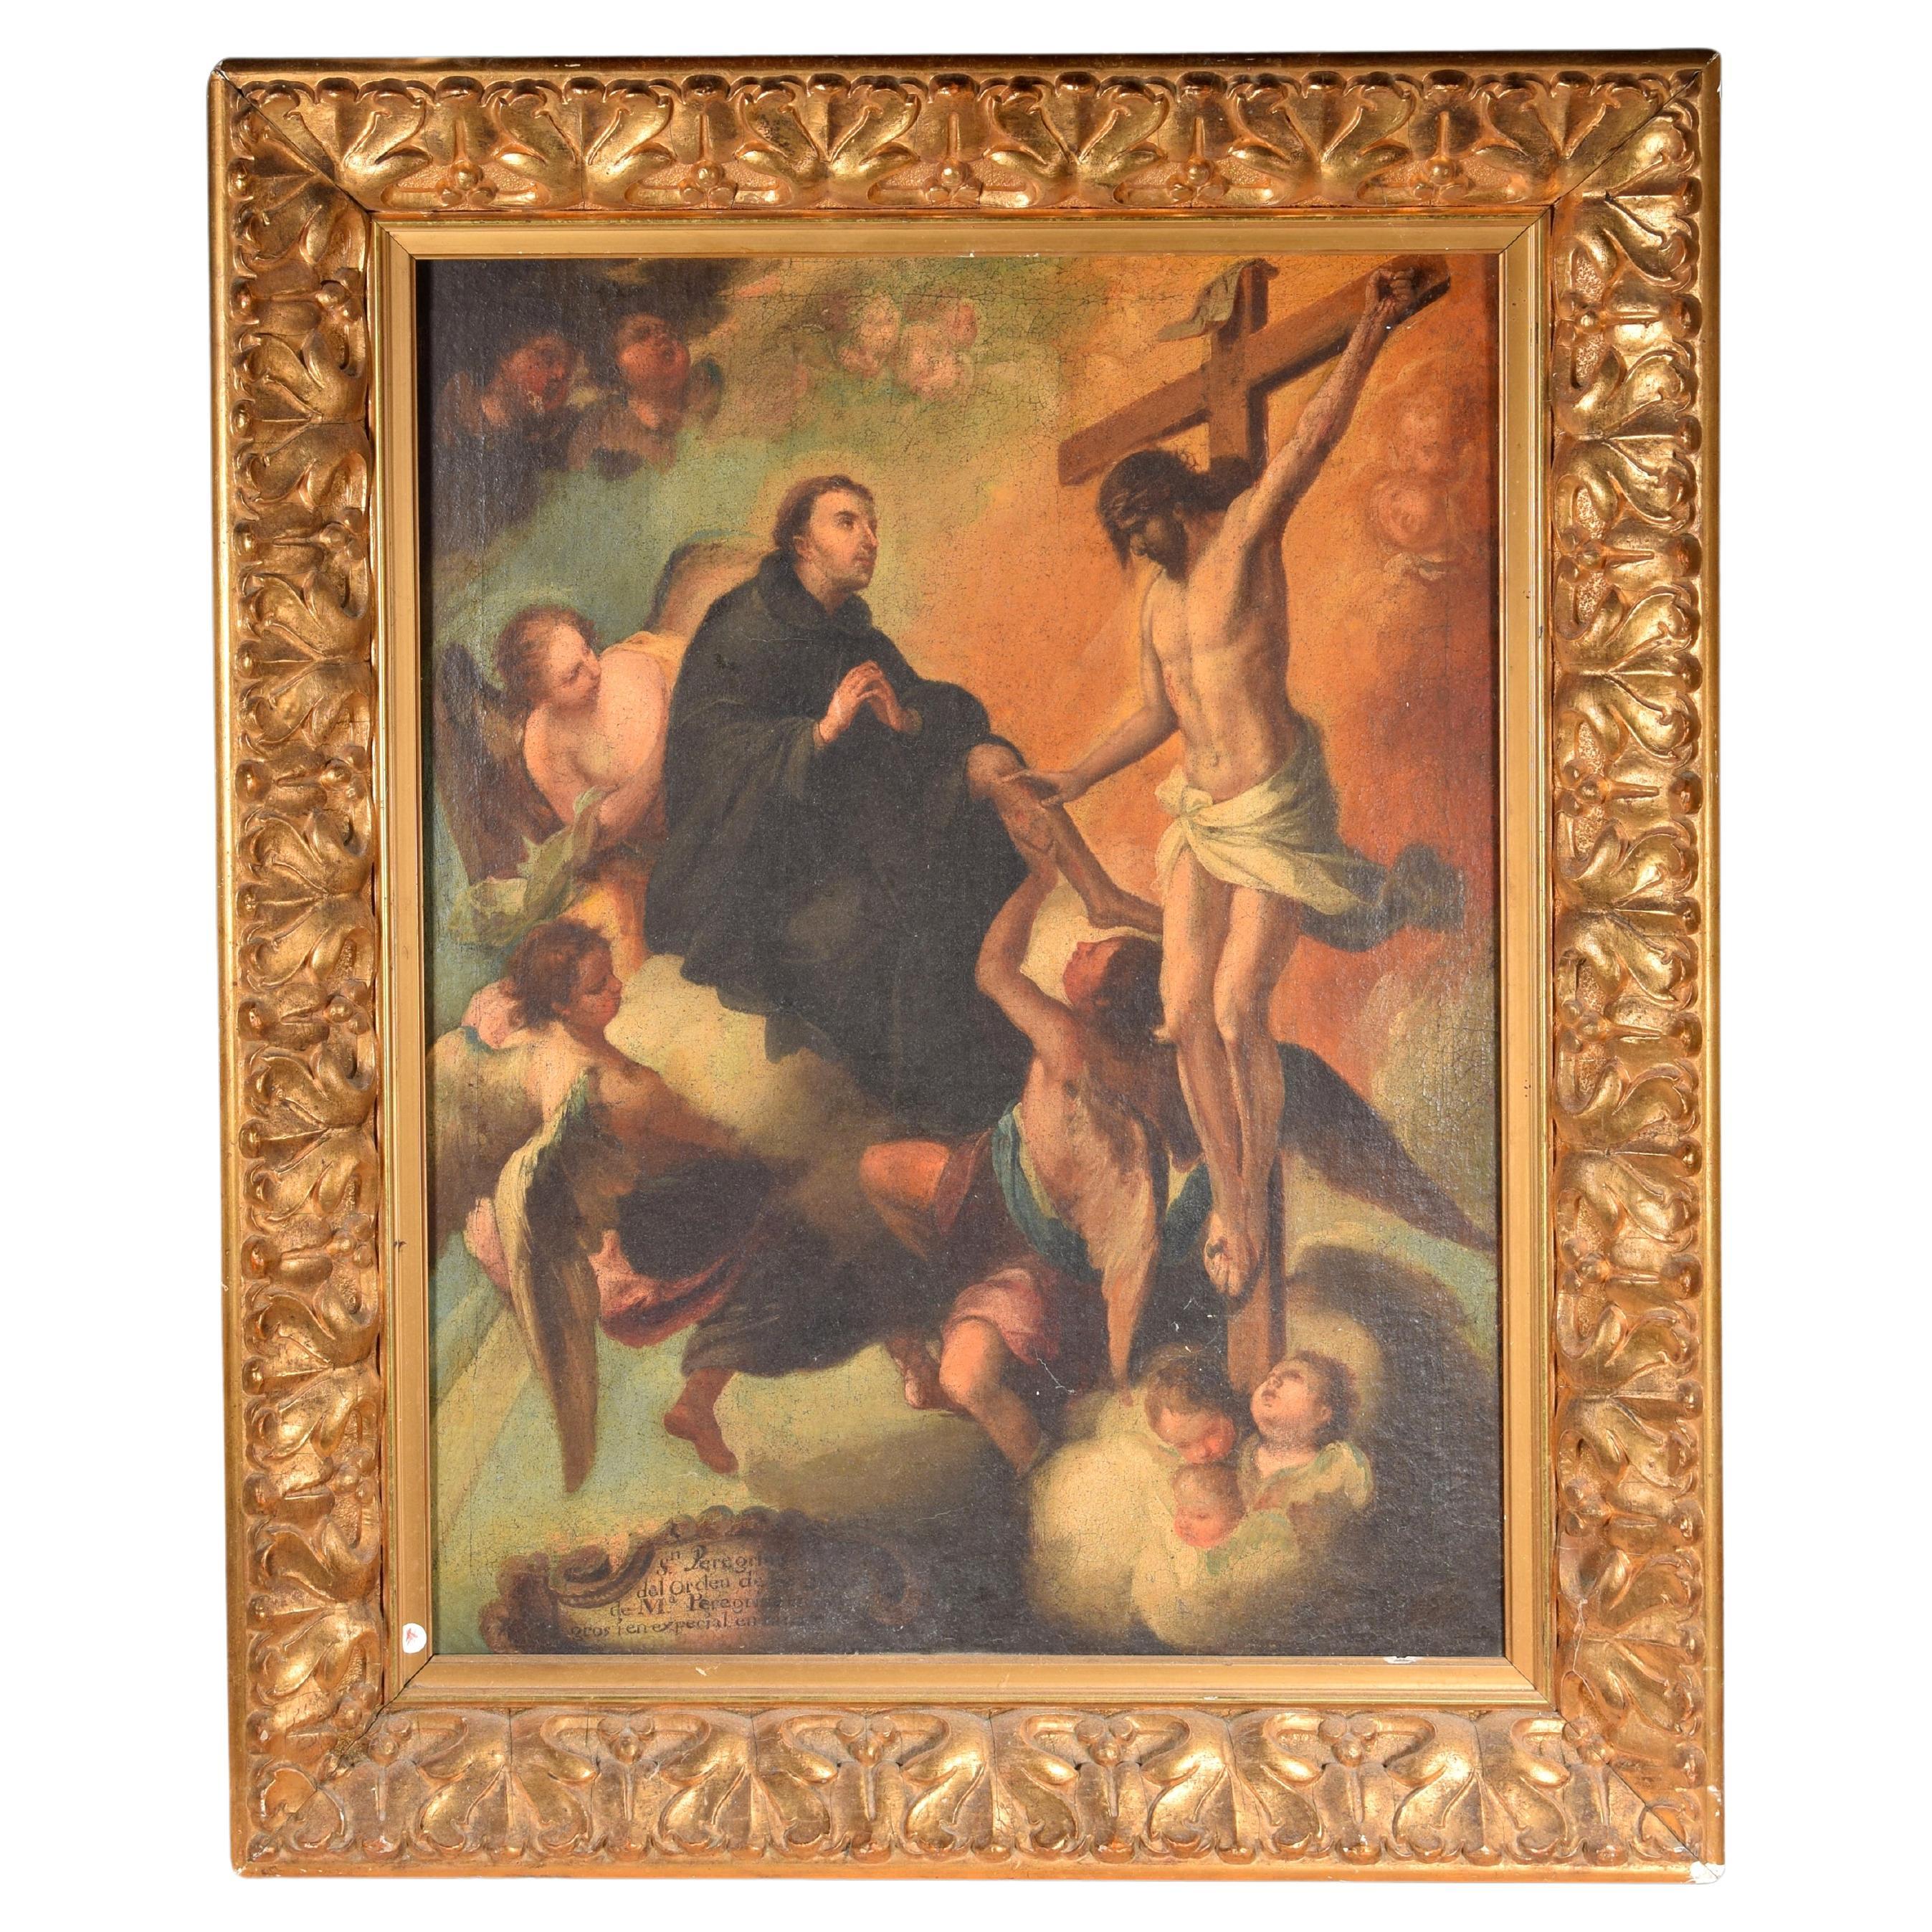 Miracle de Saint Pérouse Laziosi. Huile sur toile. École espagnole, 18e siècle.